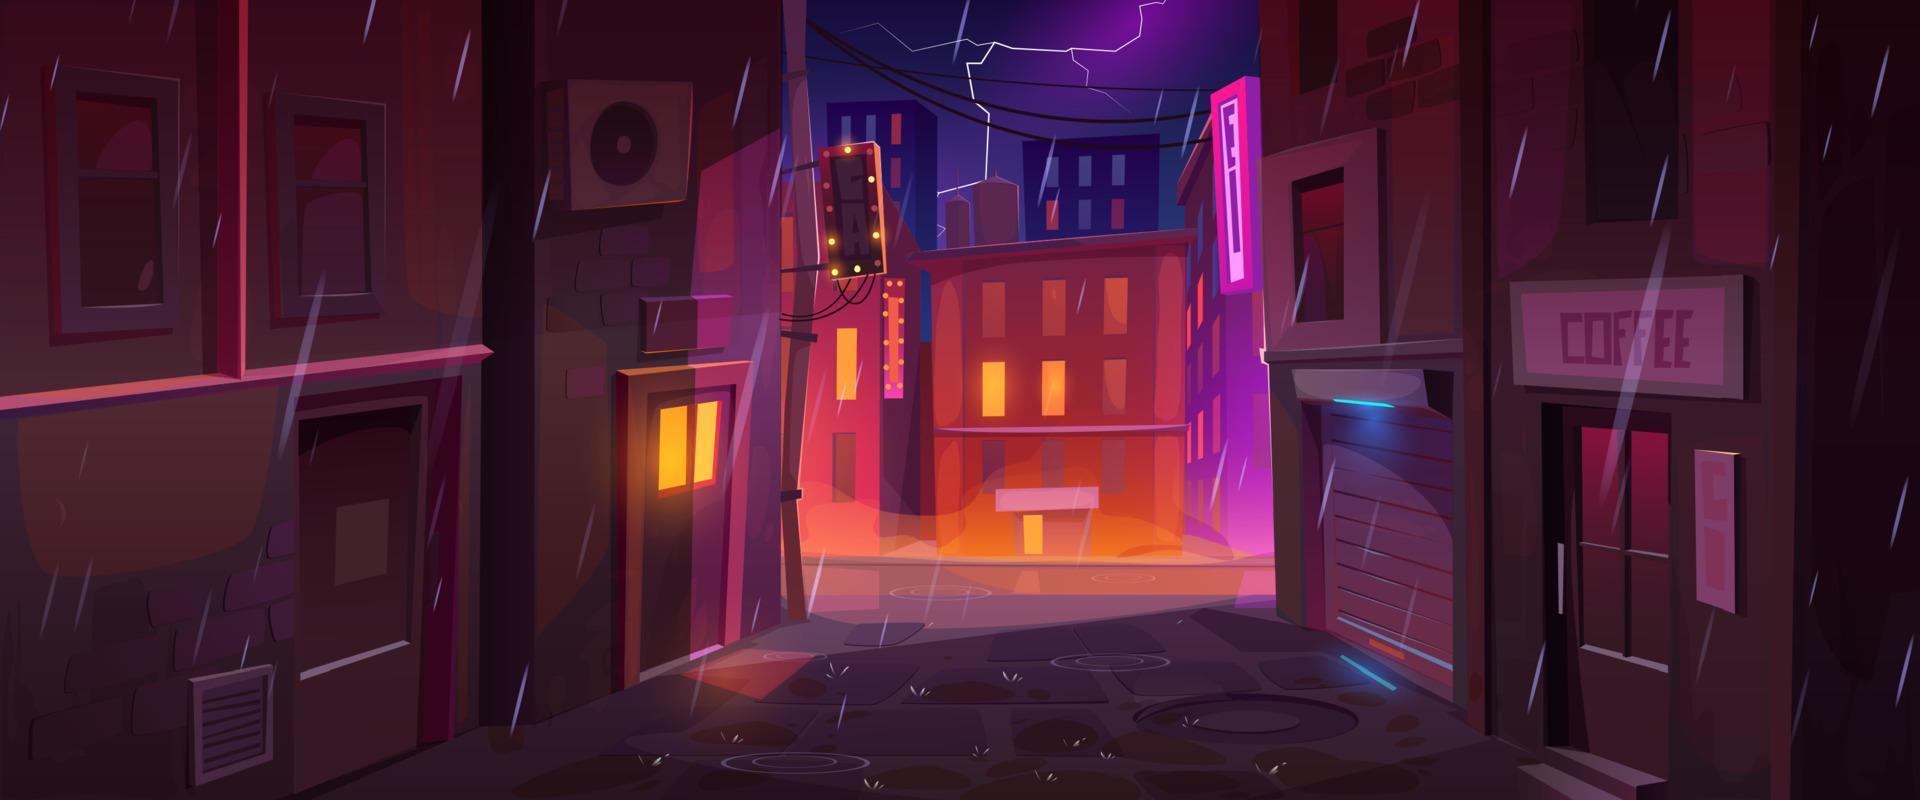 piovoso notte nel città, cartone animato vettore illustrazione